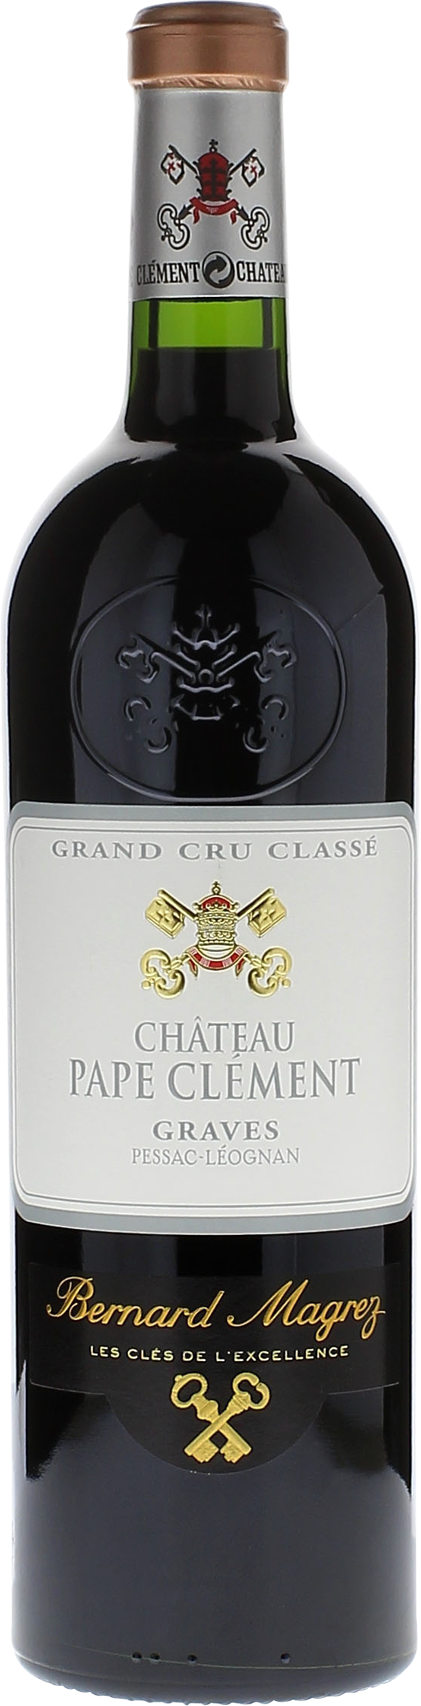 Pape clement rouge 1995 Grand Cru Class Pessac-Lognan, Bordeaux rouge